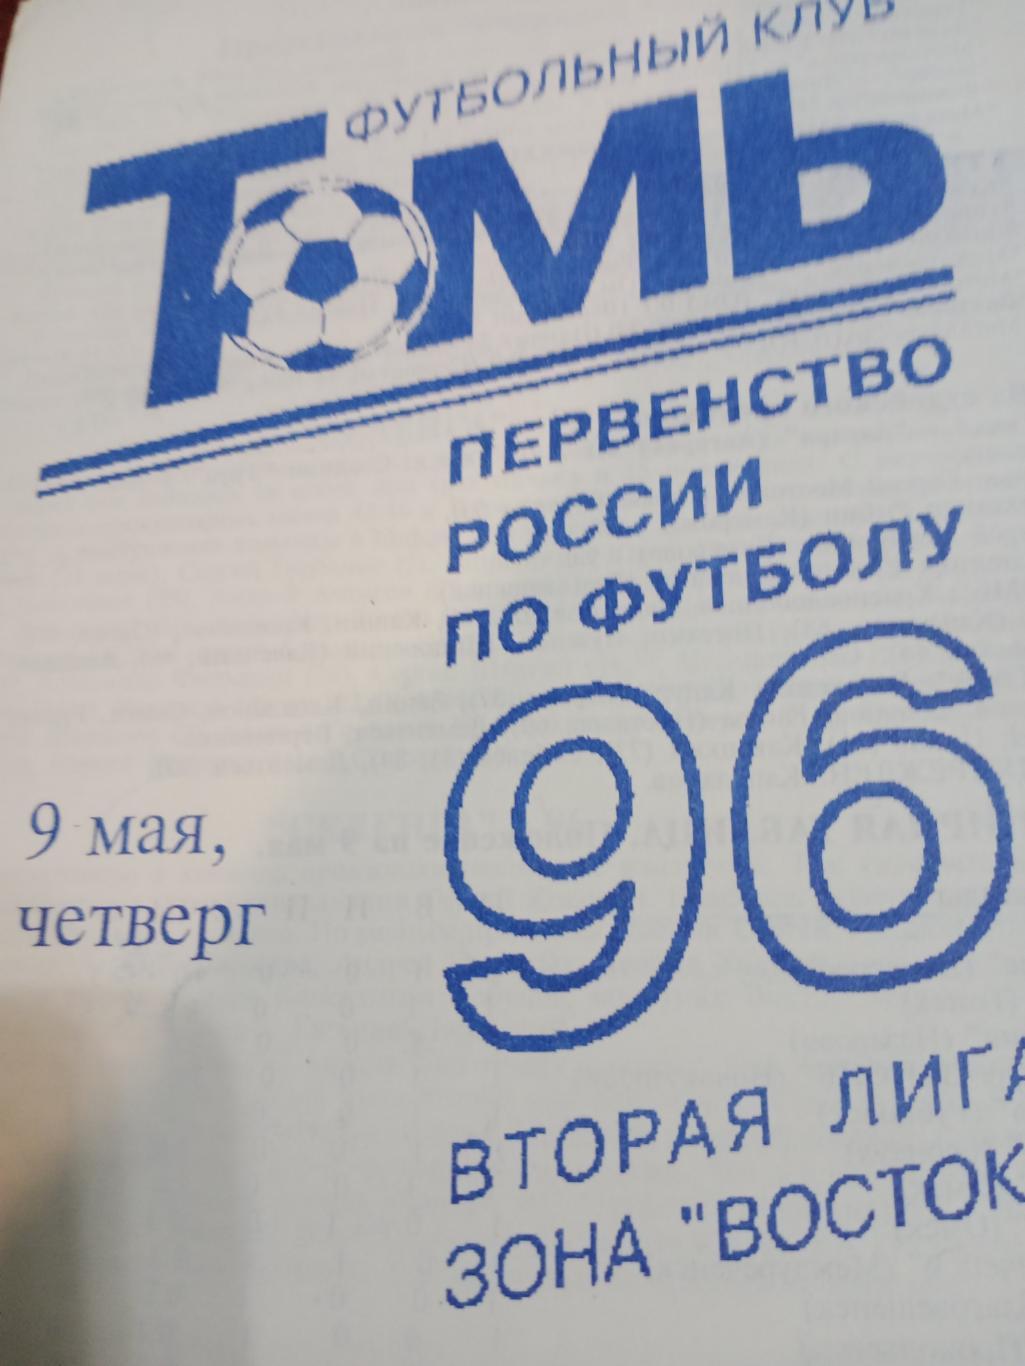 Томь - Селенга - 9 мая 1996 г